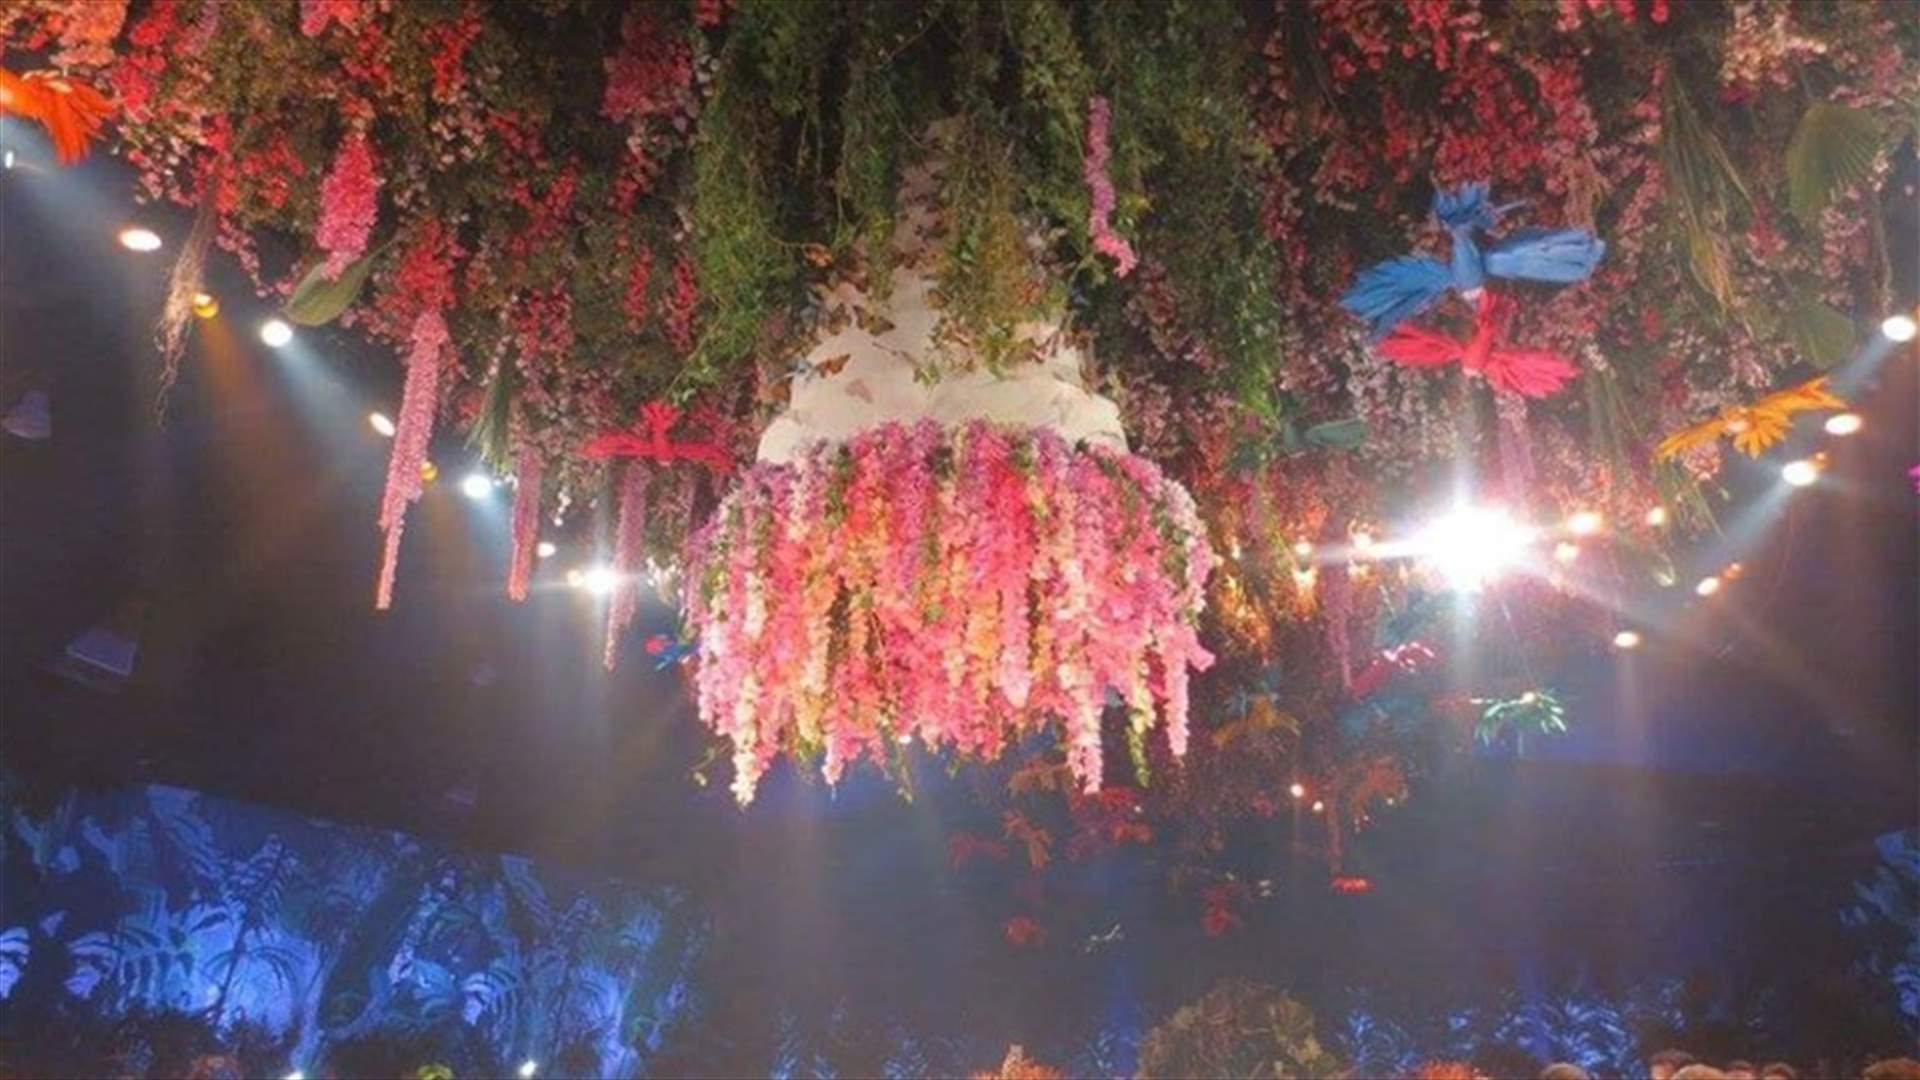 بالصوّر: حفل زفاف لبنانيّ في قاعة مزيّنة بحيوانات ضخمة